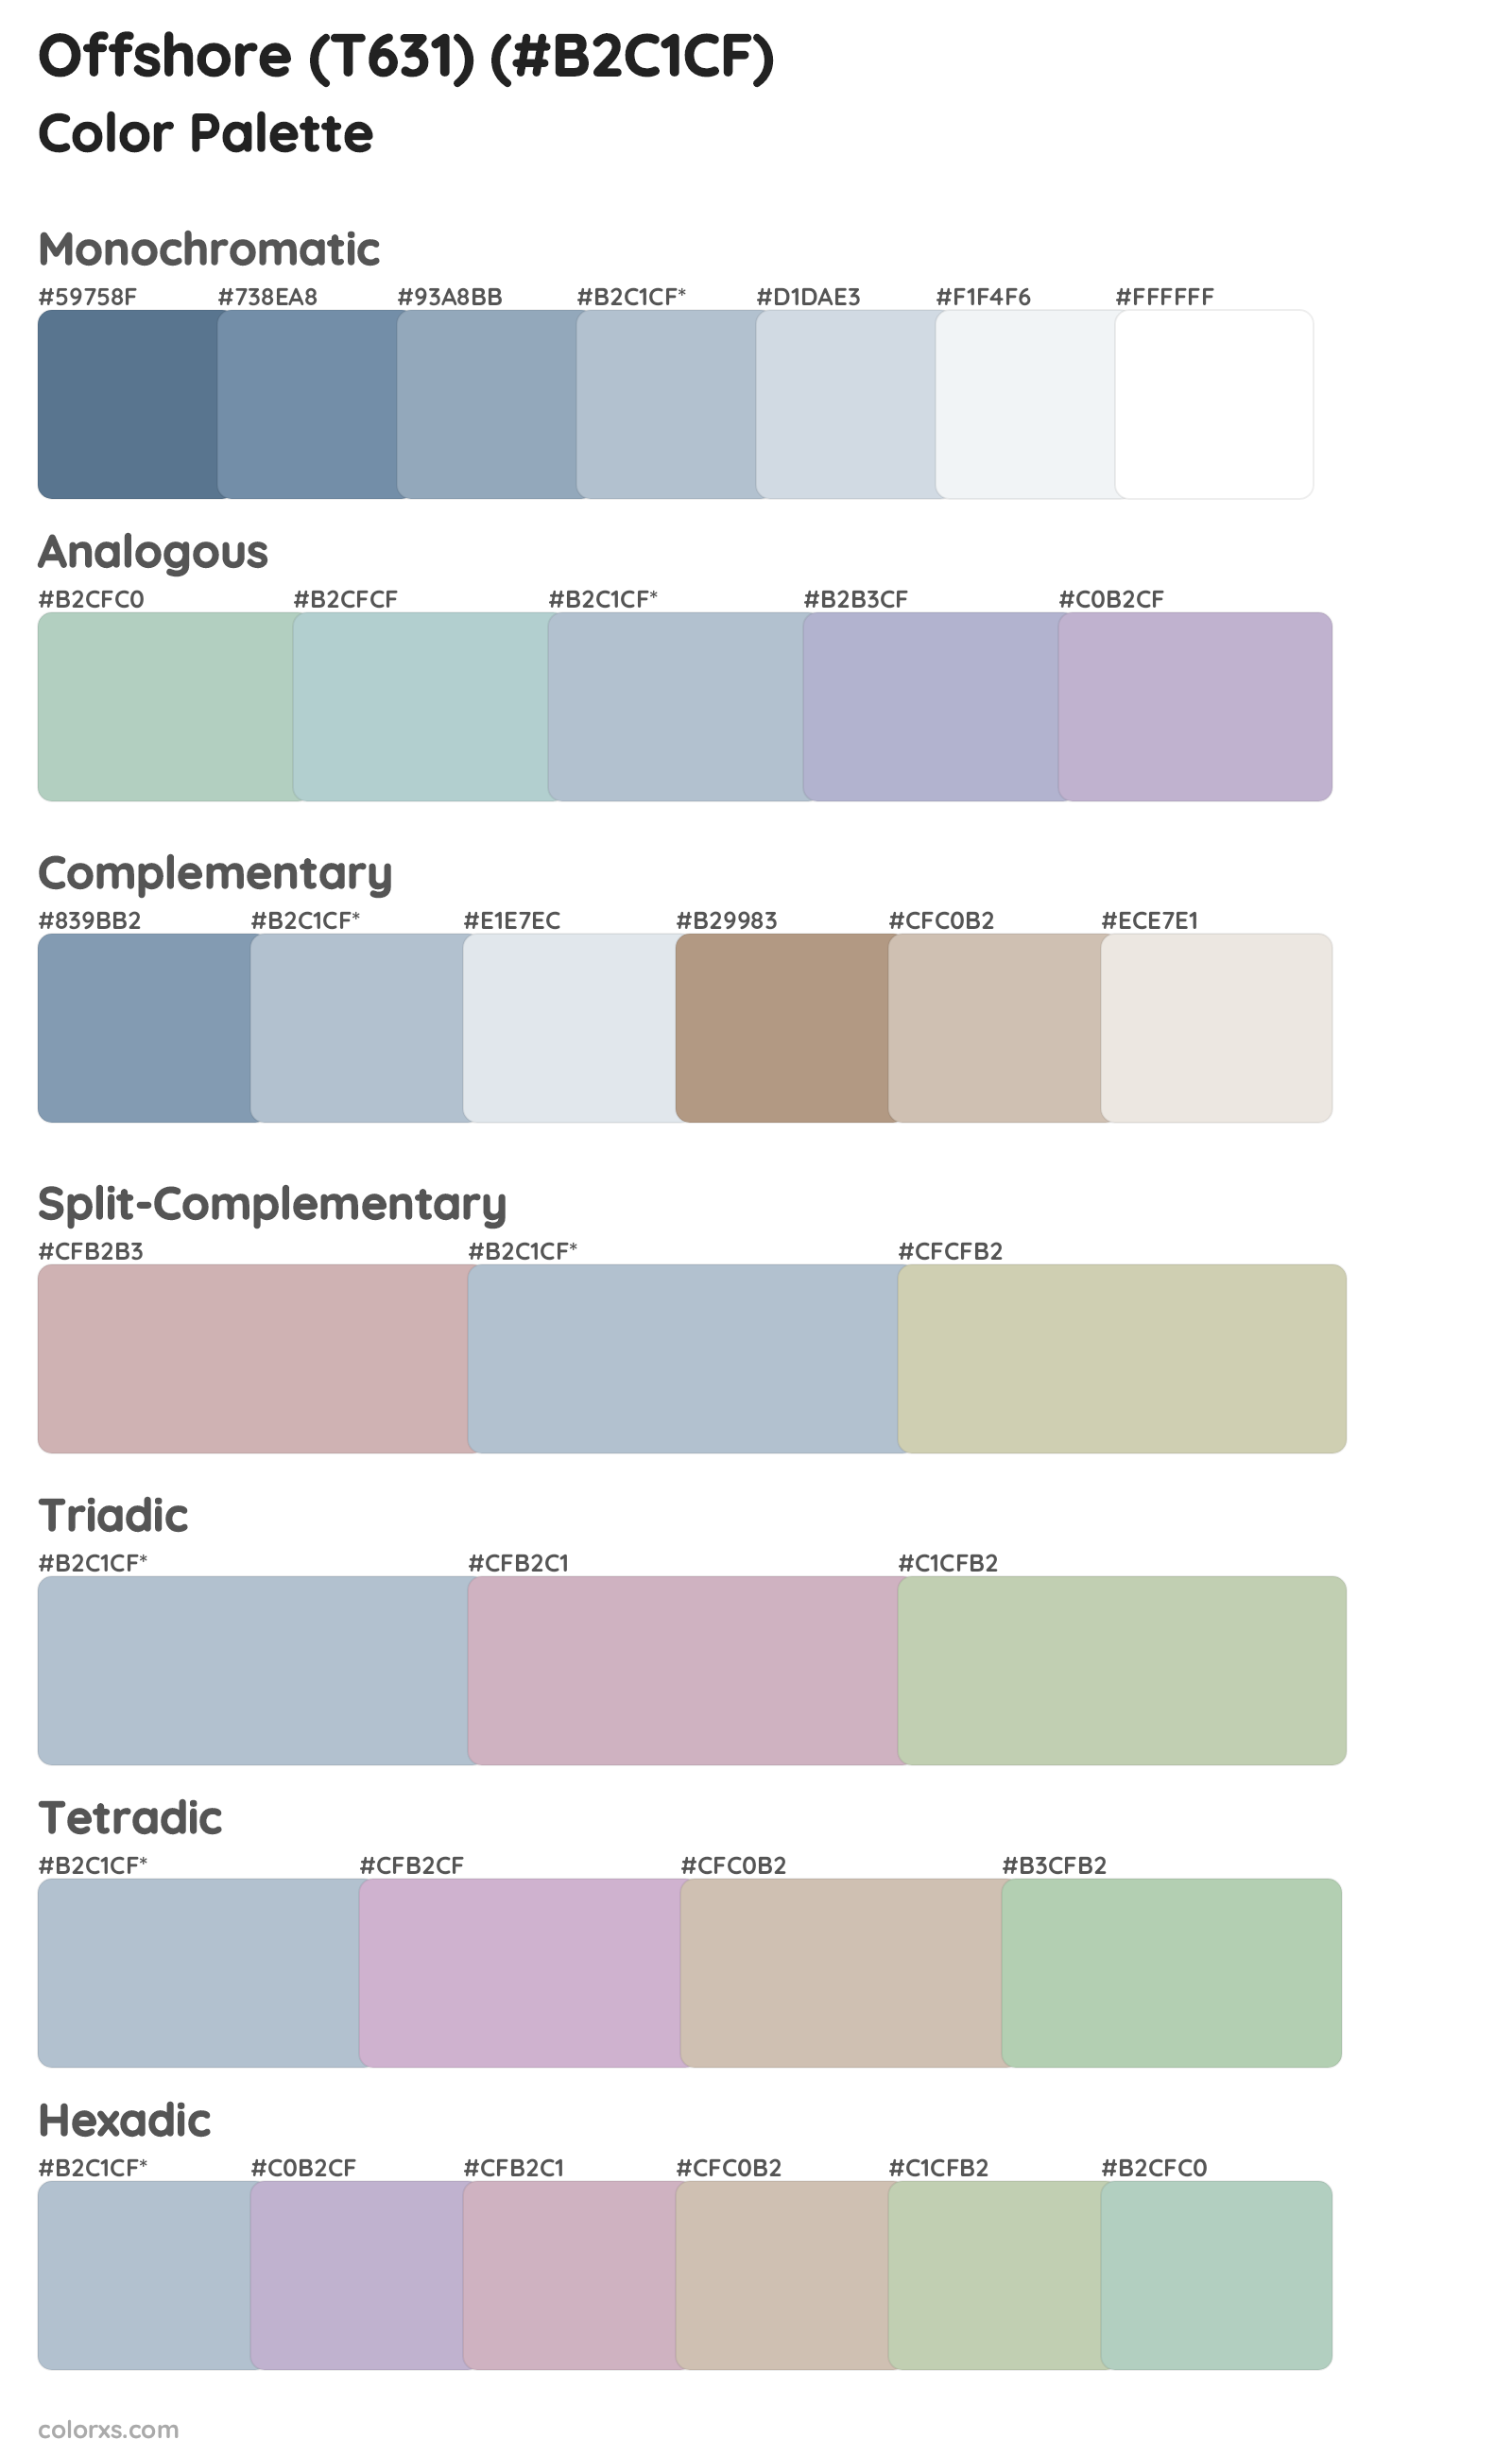 Offshore (T631) Color Scheme Palettes